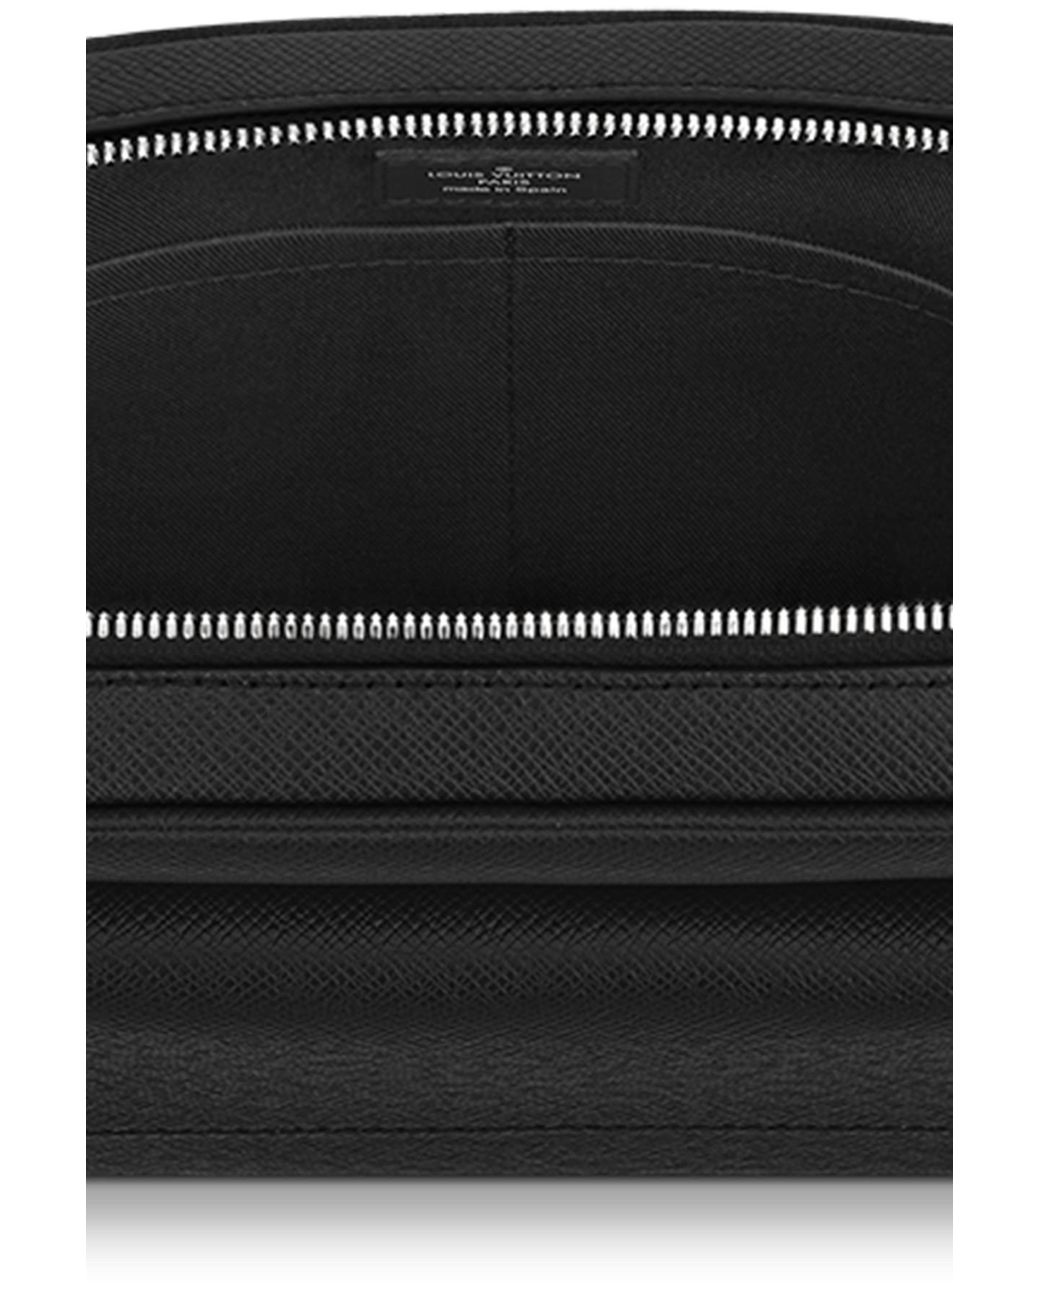 Louis Vuitton Alex Messenger Pm in Black for Men